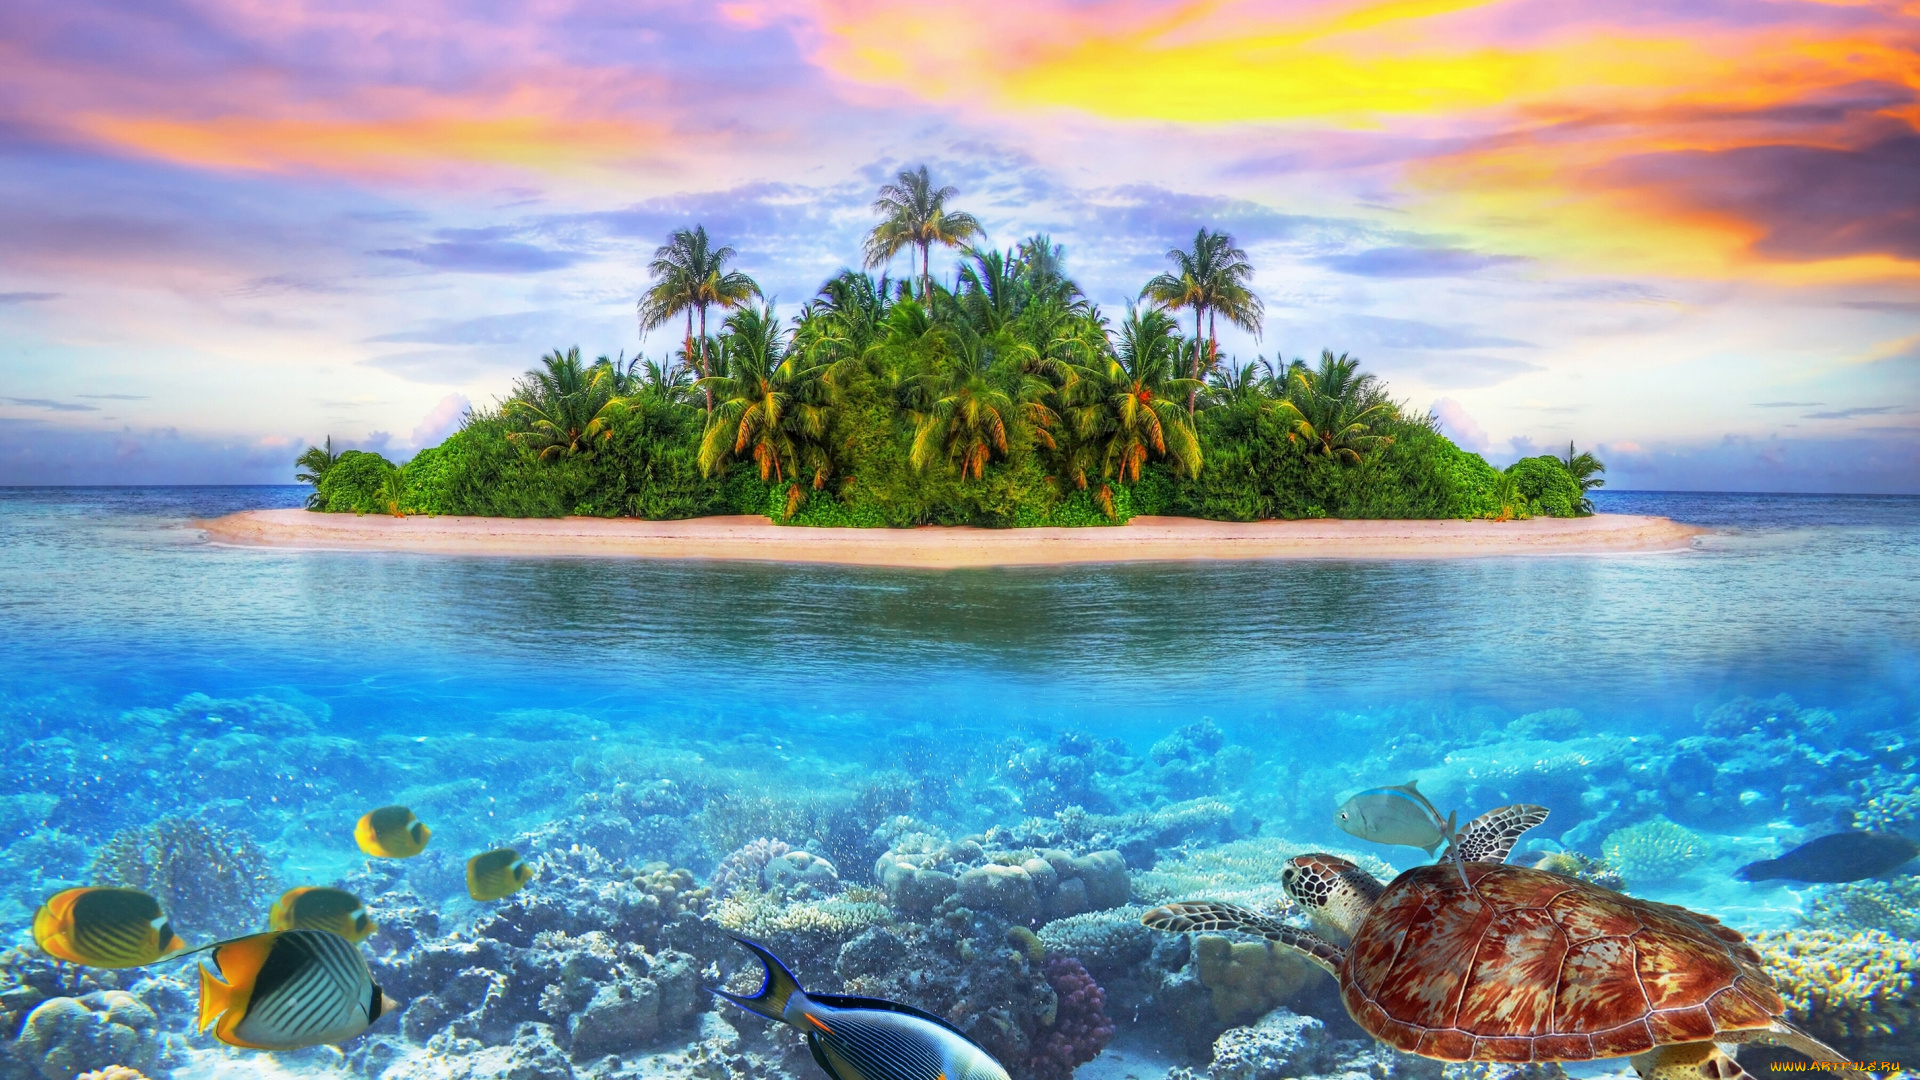 maldives, природа, тропики, indian, ocean, arabian, sea, мальдивы, индийский, океан, аравийское, море, остров, морское, дно, рыбы, черепаха, кораллы, закат